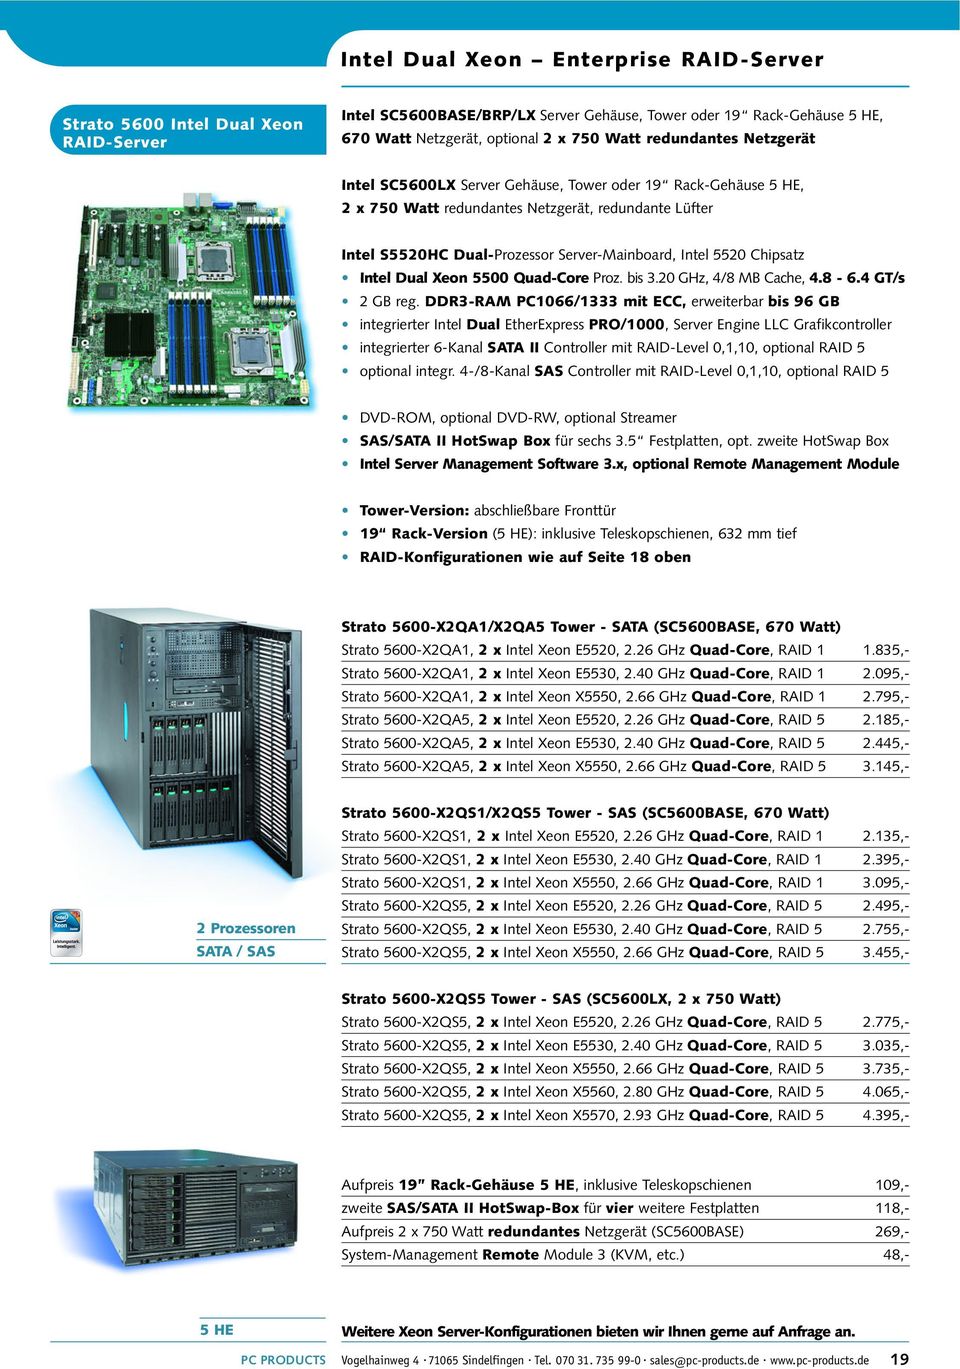 Chipsatz Intel Dual Xeon 5500 Quad-Core Proz. bis 3.20 GHz, 4/8 MB Cache, 4.8-6.4 GT/s 2 GB reg.